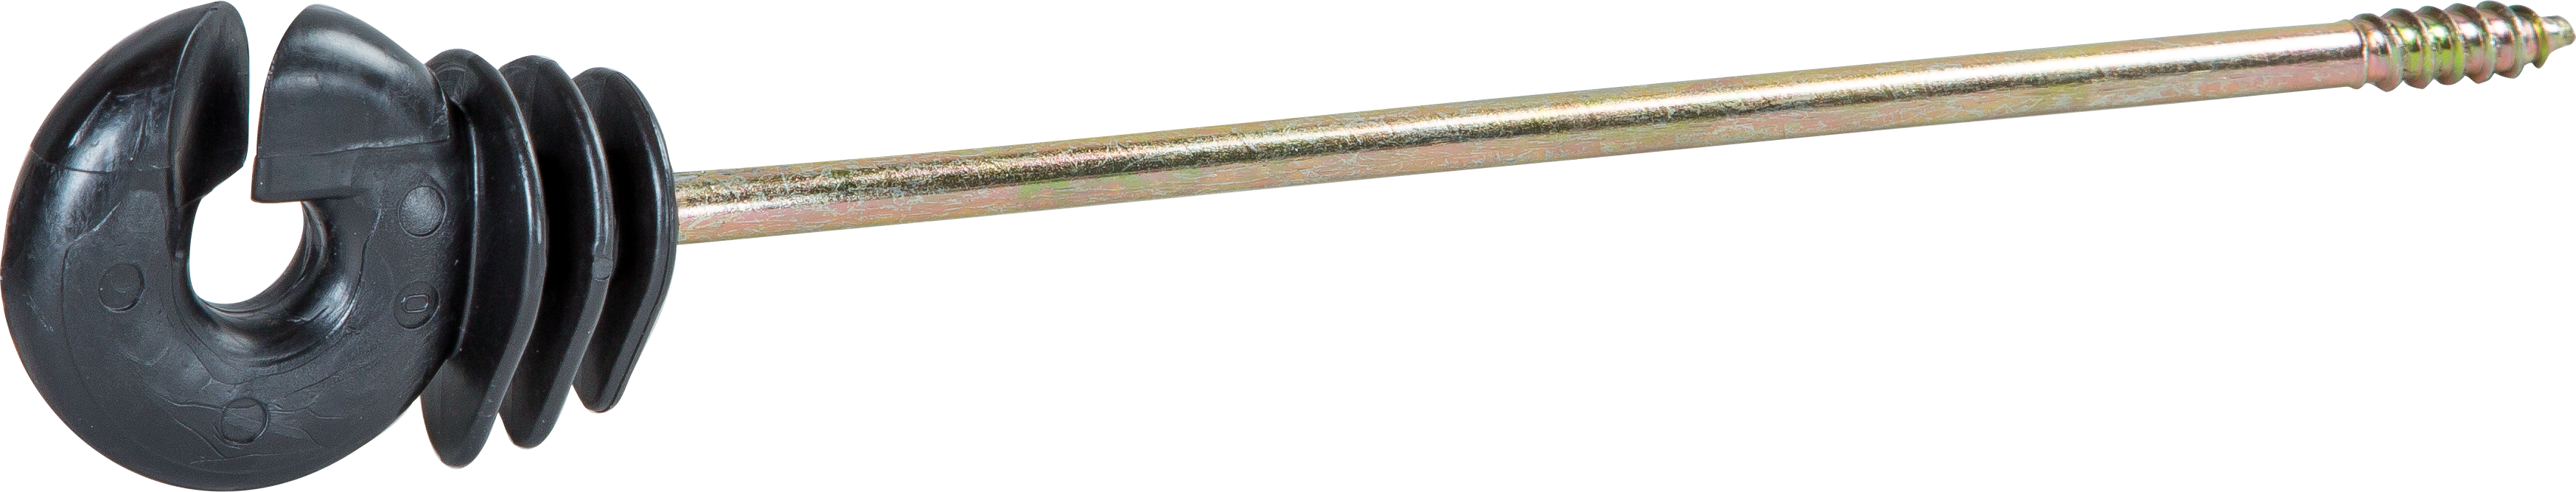 Ringisolator mit langem Schaft, gerade Schaftlänge 18 cm Holzgewinde (10 Stück / Pack)